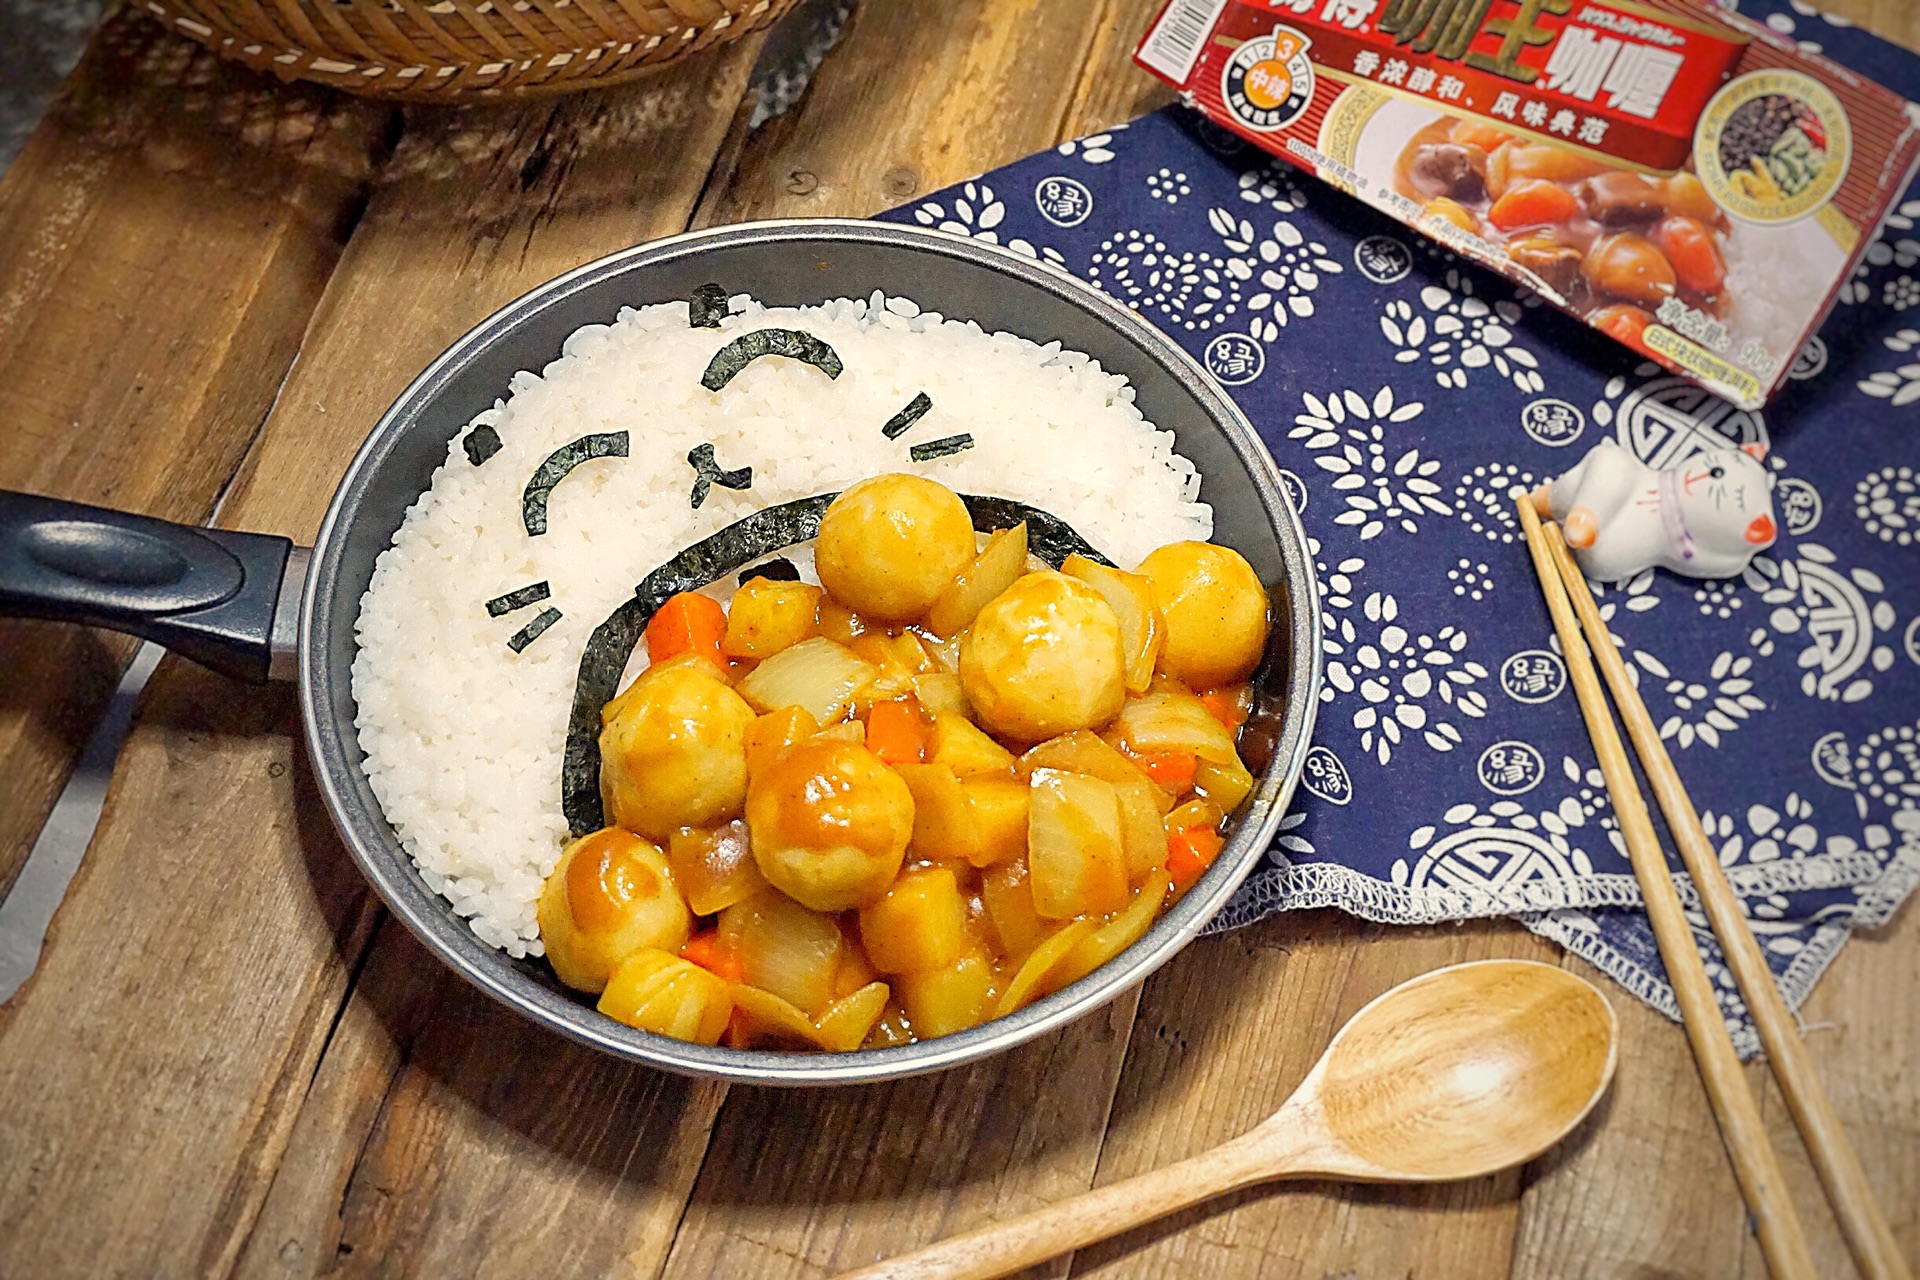 印度式咖喱鱼 Tamarind Fish Curry (Gulai Mackerel Fish) - Nanyang Kitchen 南洋小厨